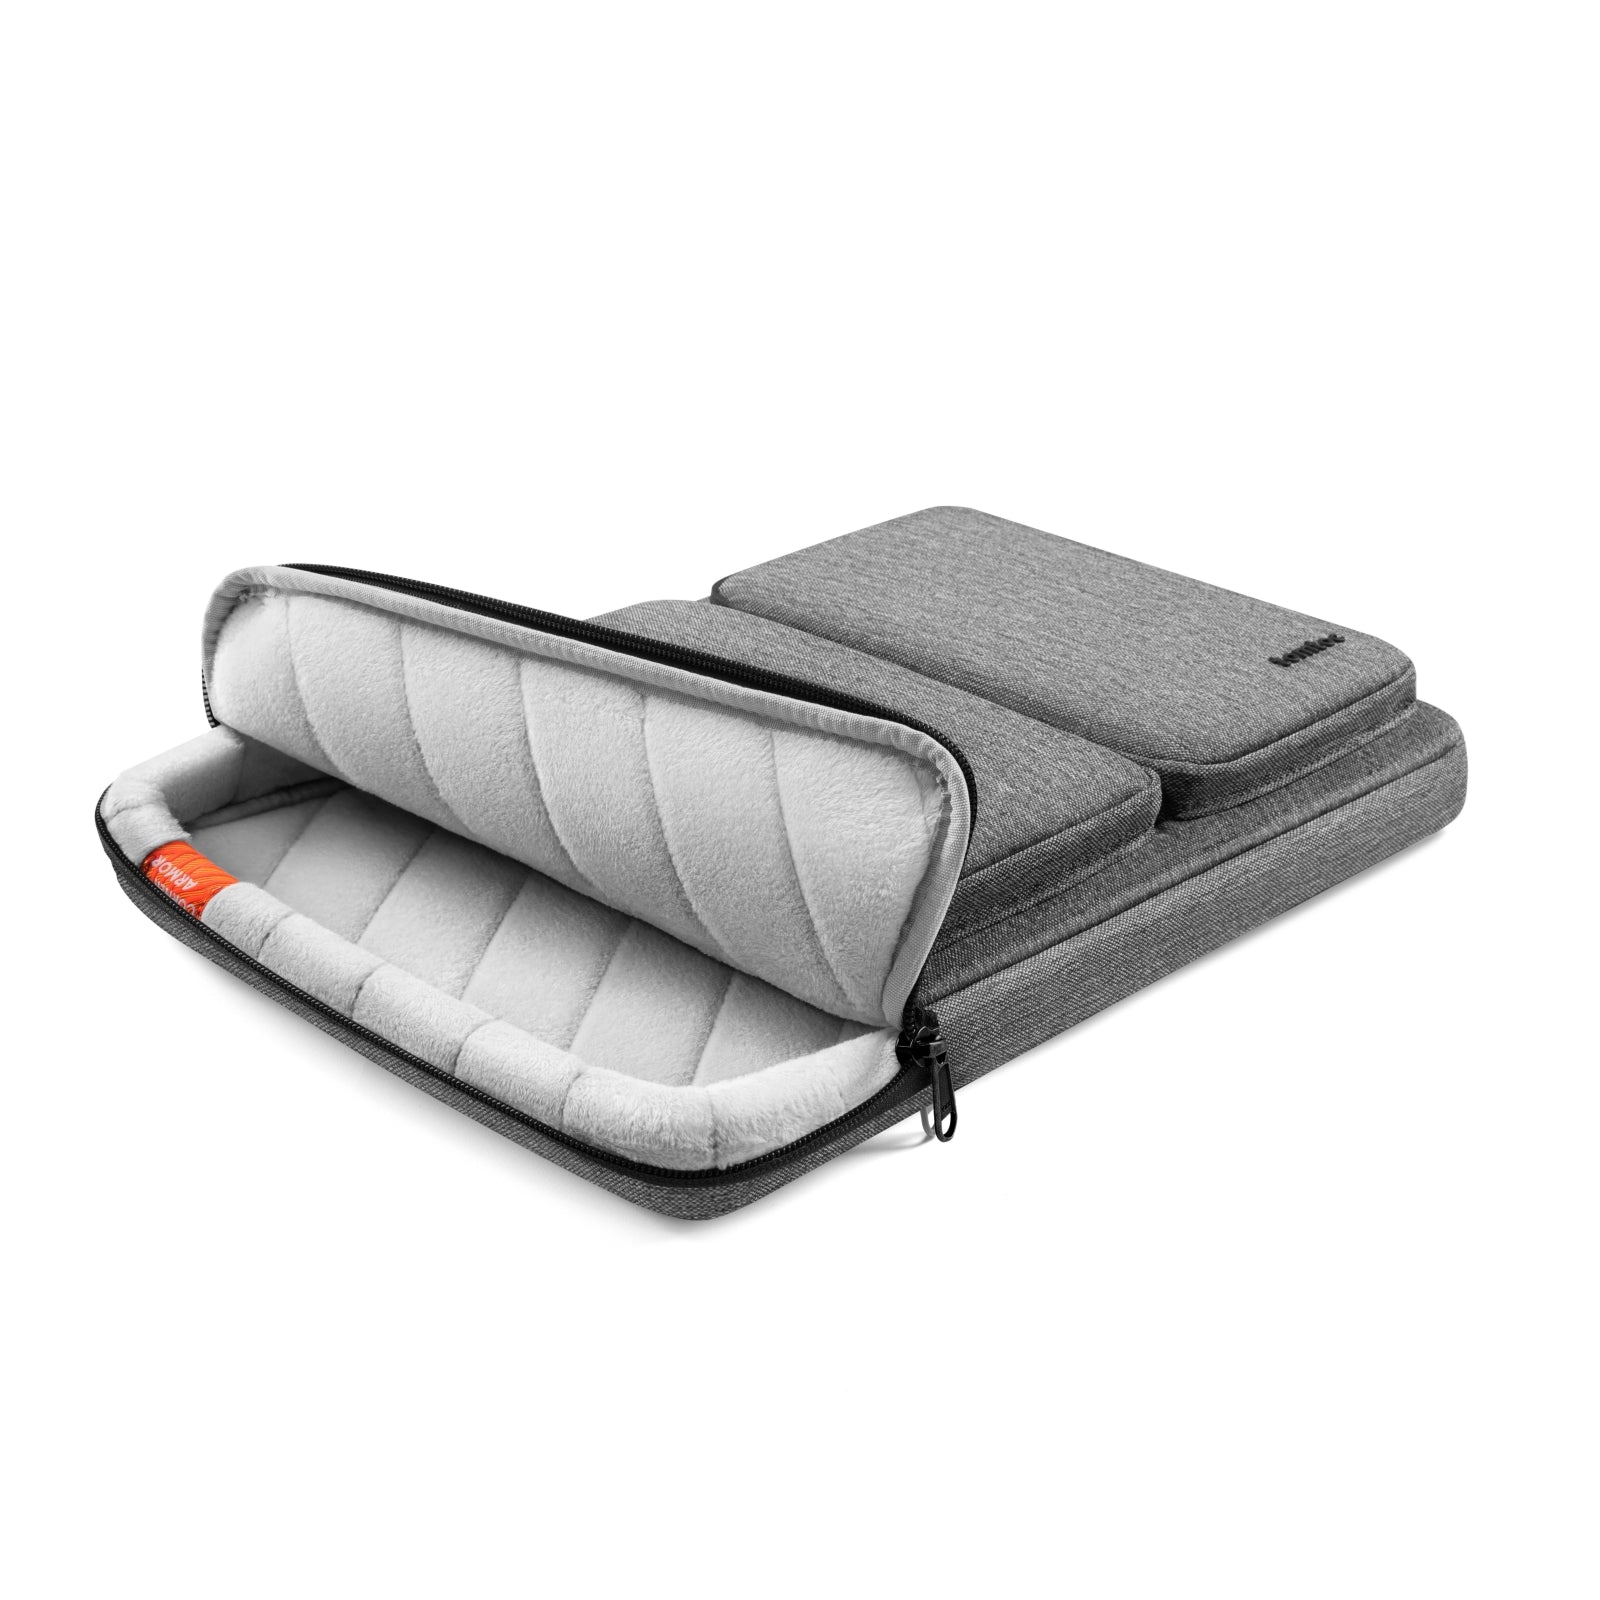 Defender-A17 Laptop Handbag For 16-inch MacBook Pro | Grey